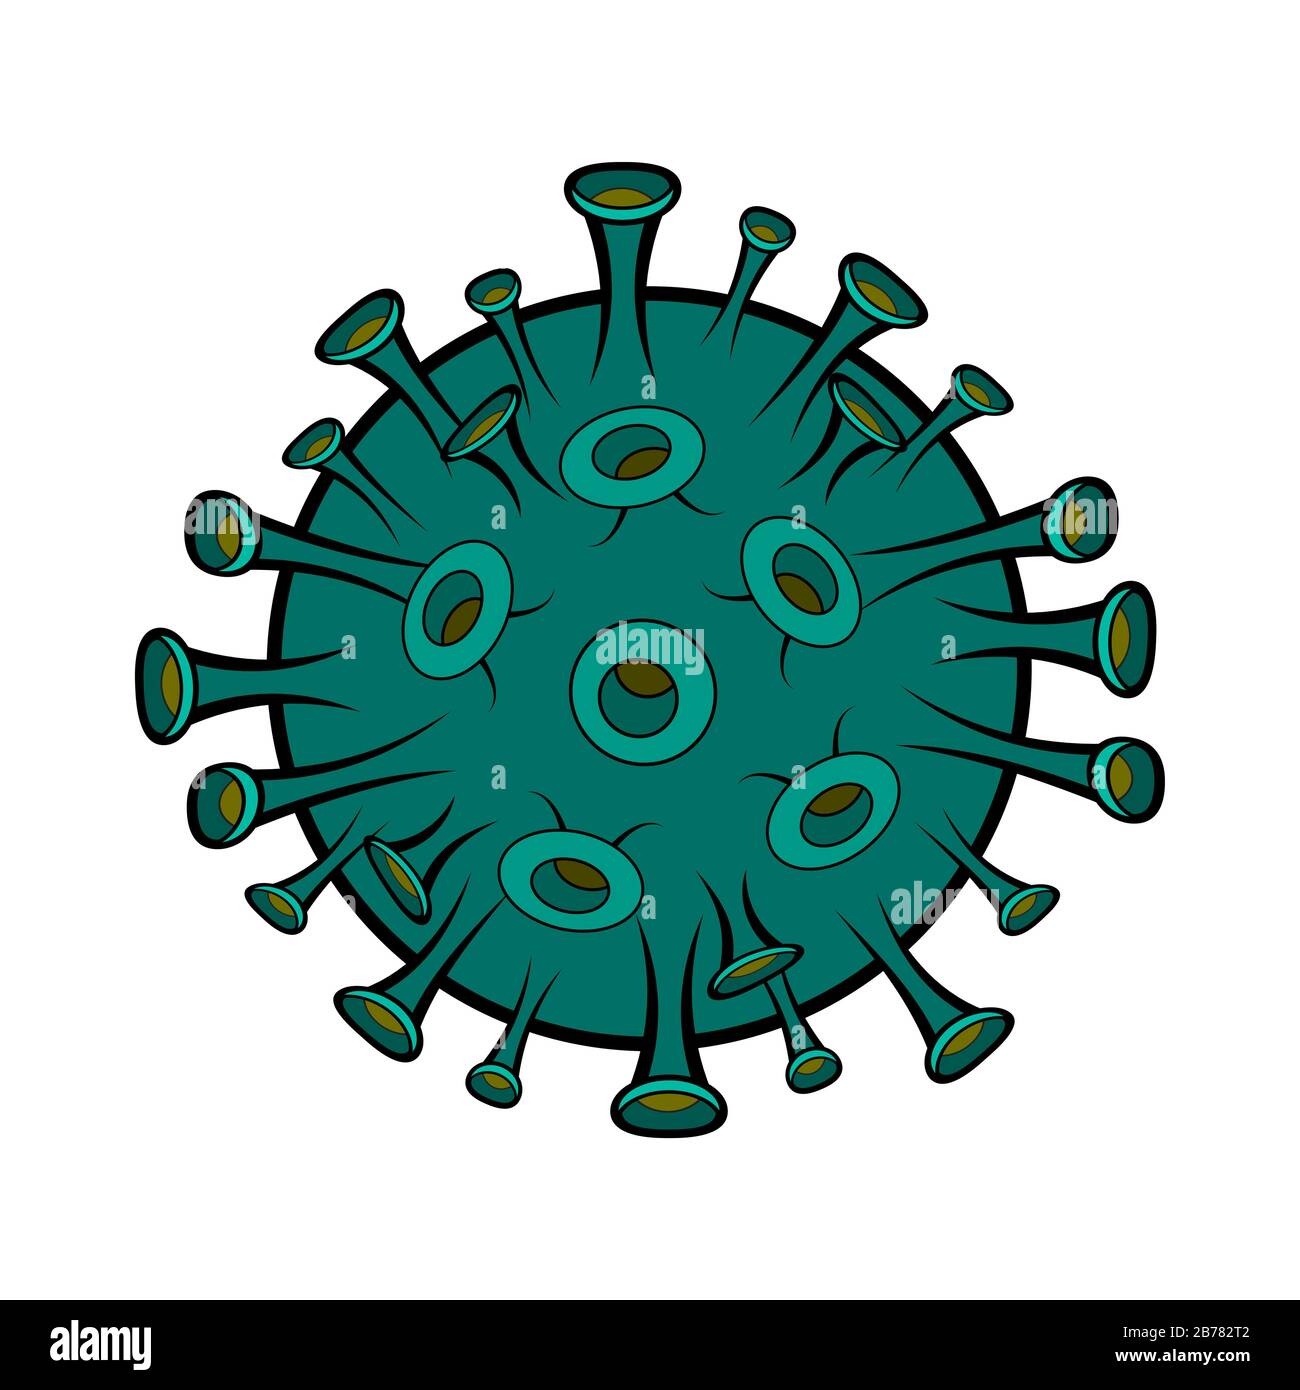 Illustrazione dei cartoni animati di coronavirus isolata su sfondo bianco. Pregate per la cina. Illustrazioni Concept Corona virus COVID-19. Virus wuhan dalla cina. Illustrazione Vettoriale